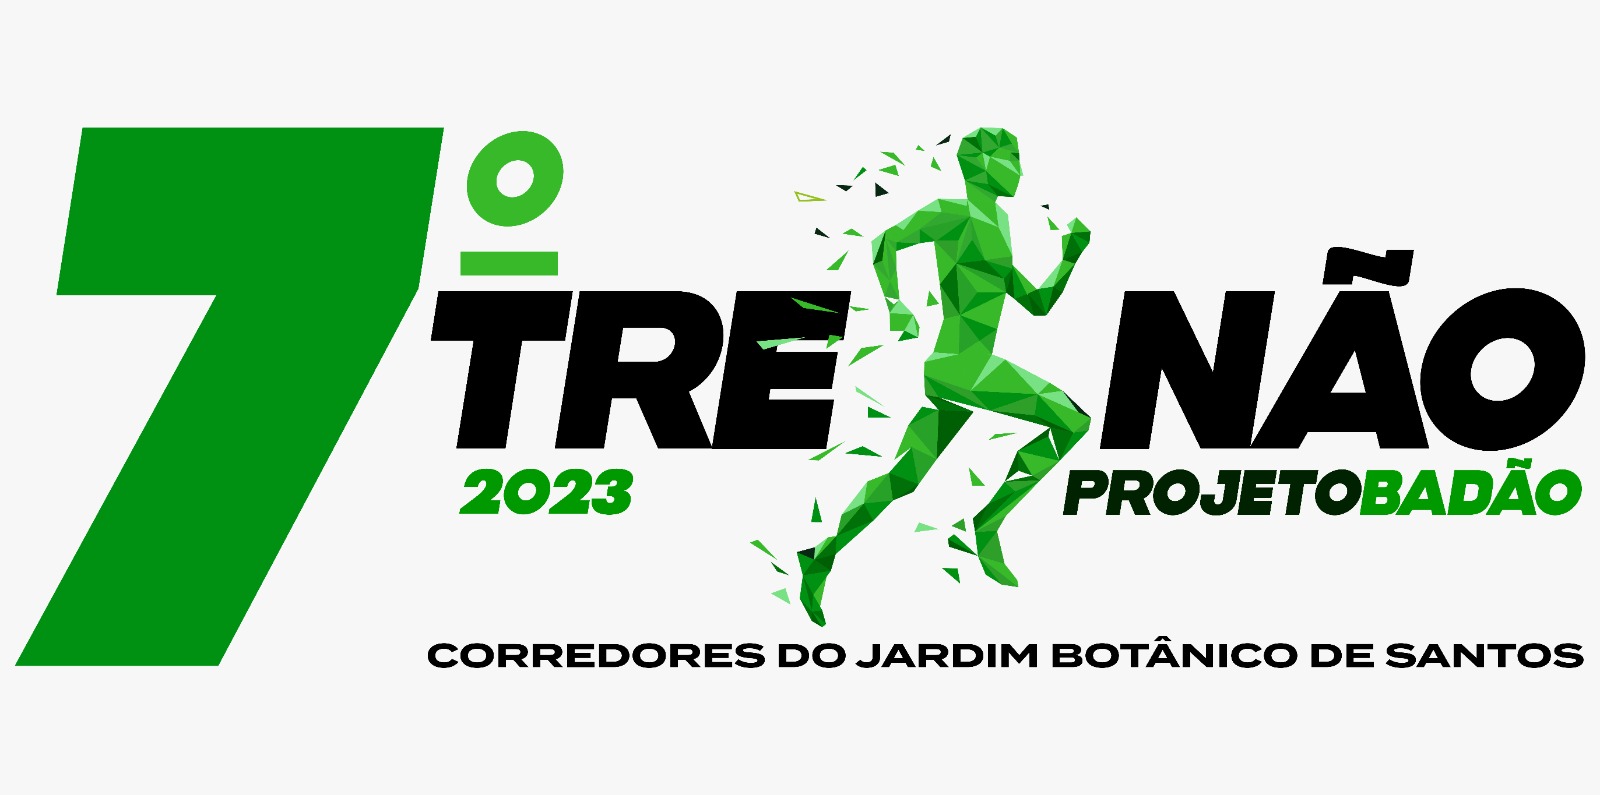 7º Treinão Projeto Badão Jardim Botânico de Santos 2023